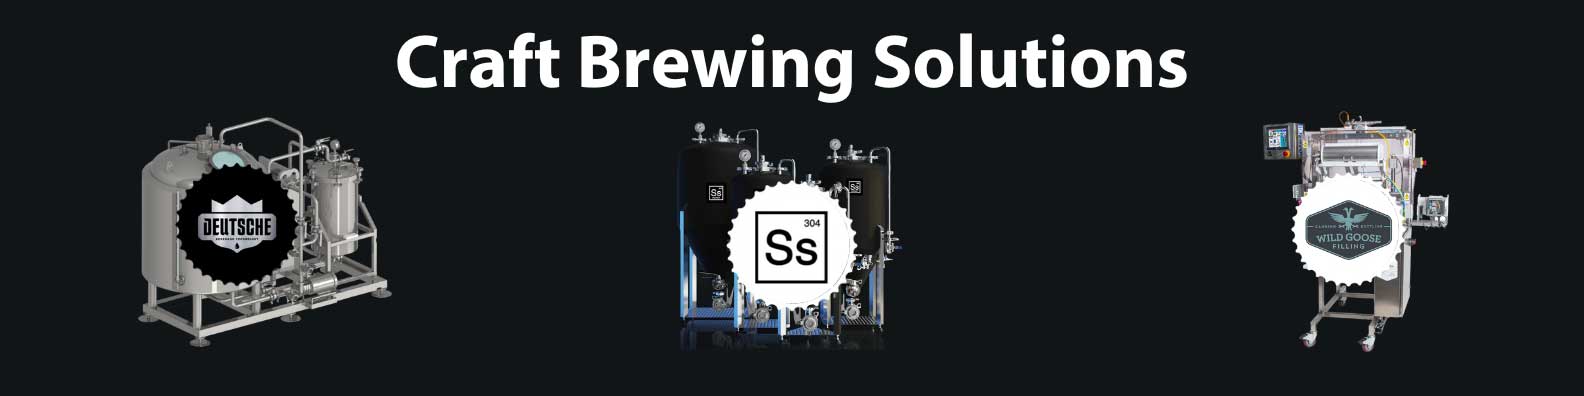 Ss Brewtech and Deutsche Beverage Technology